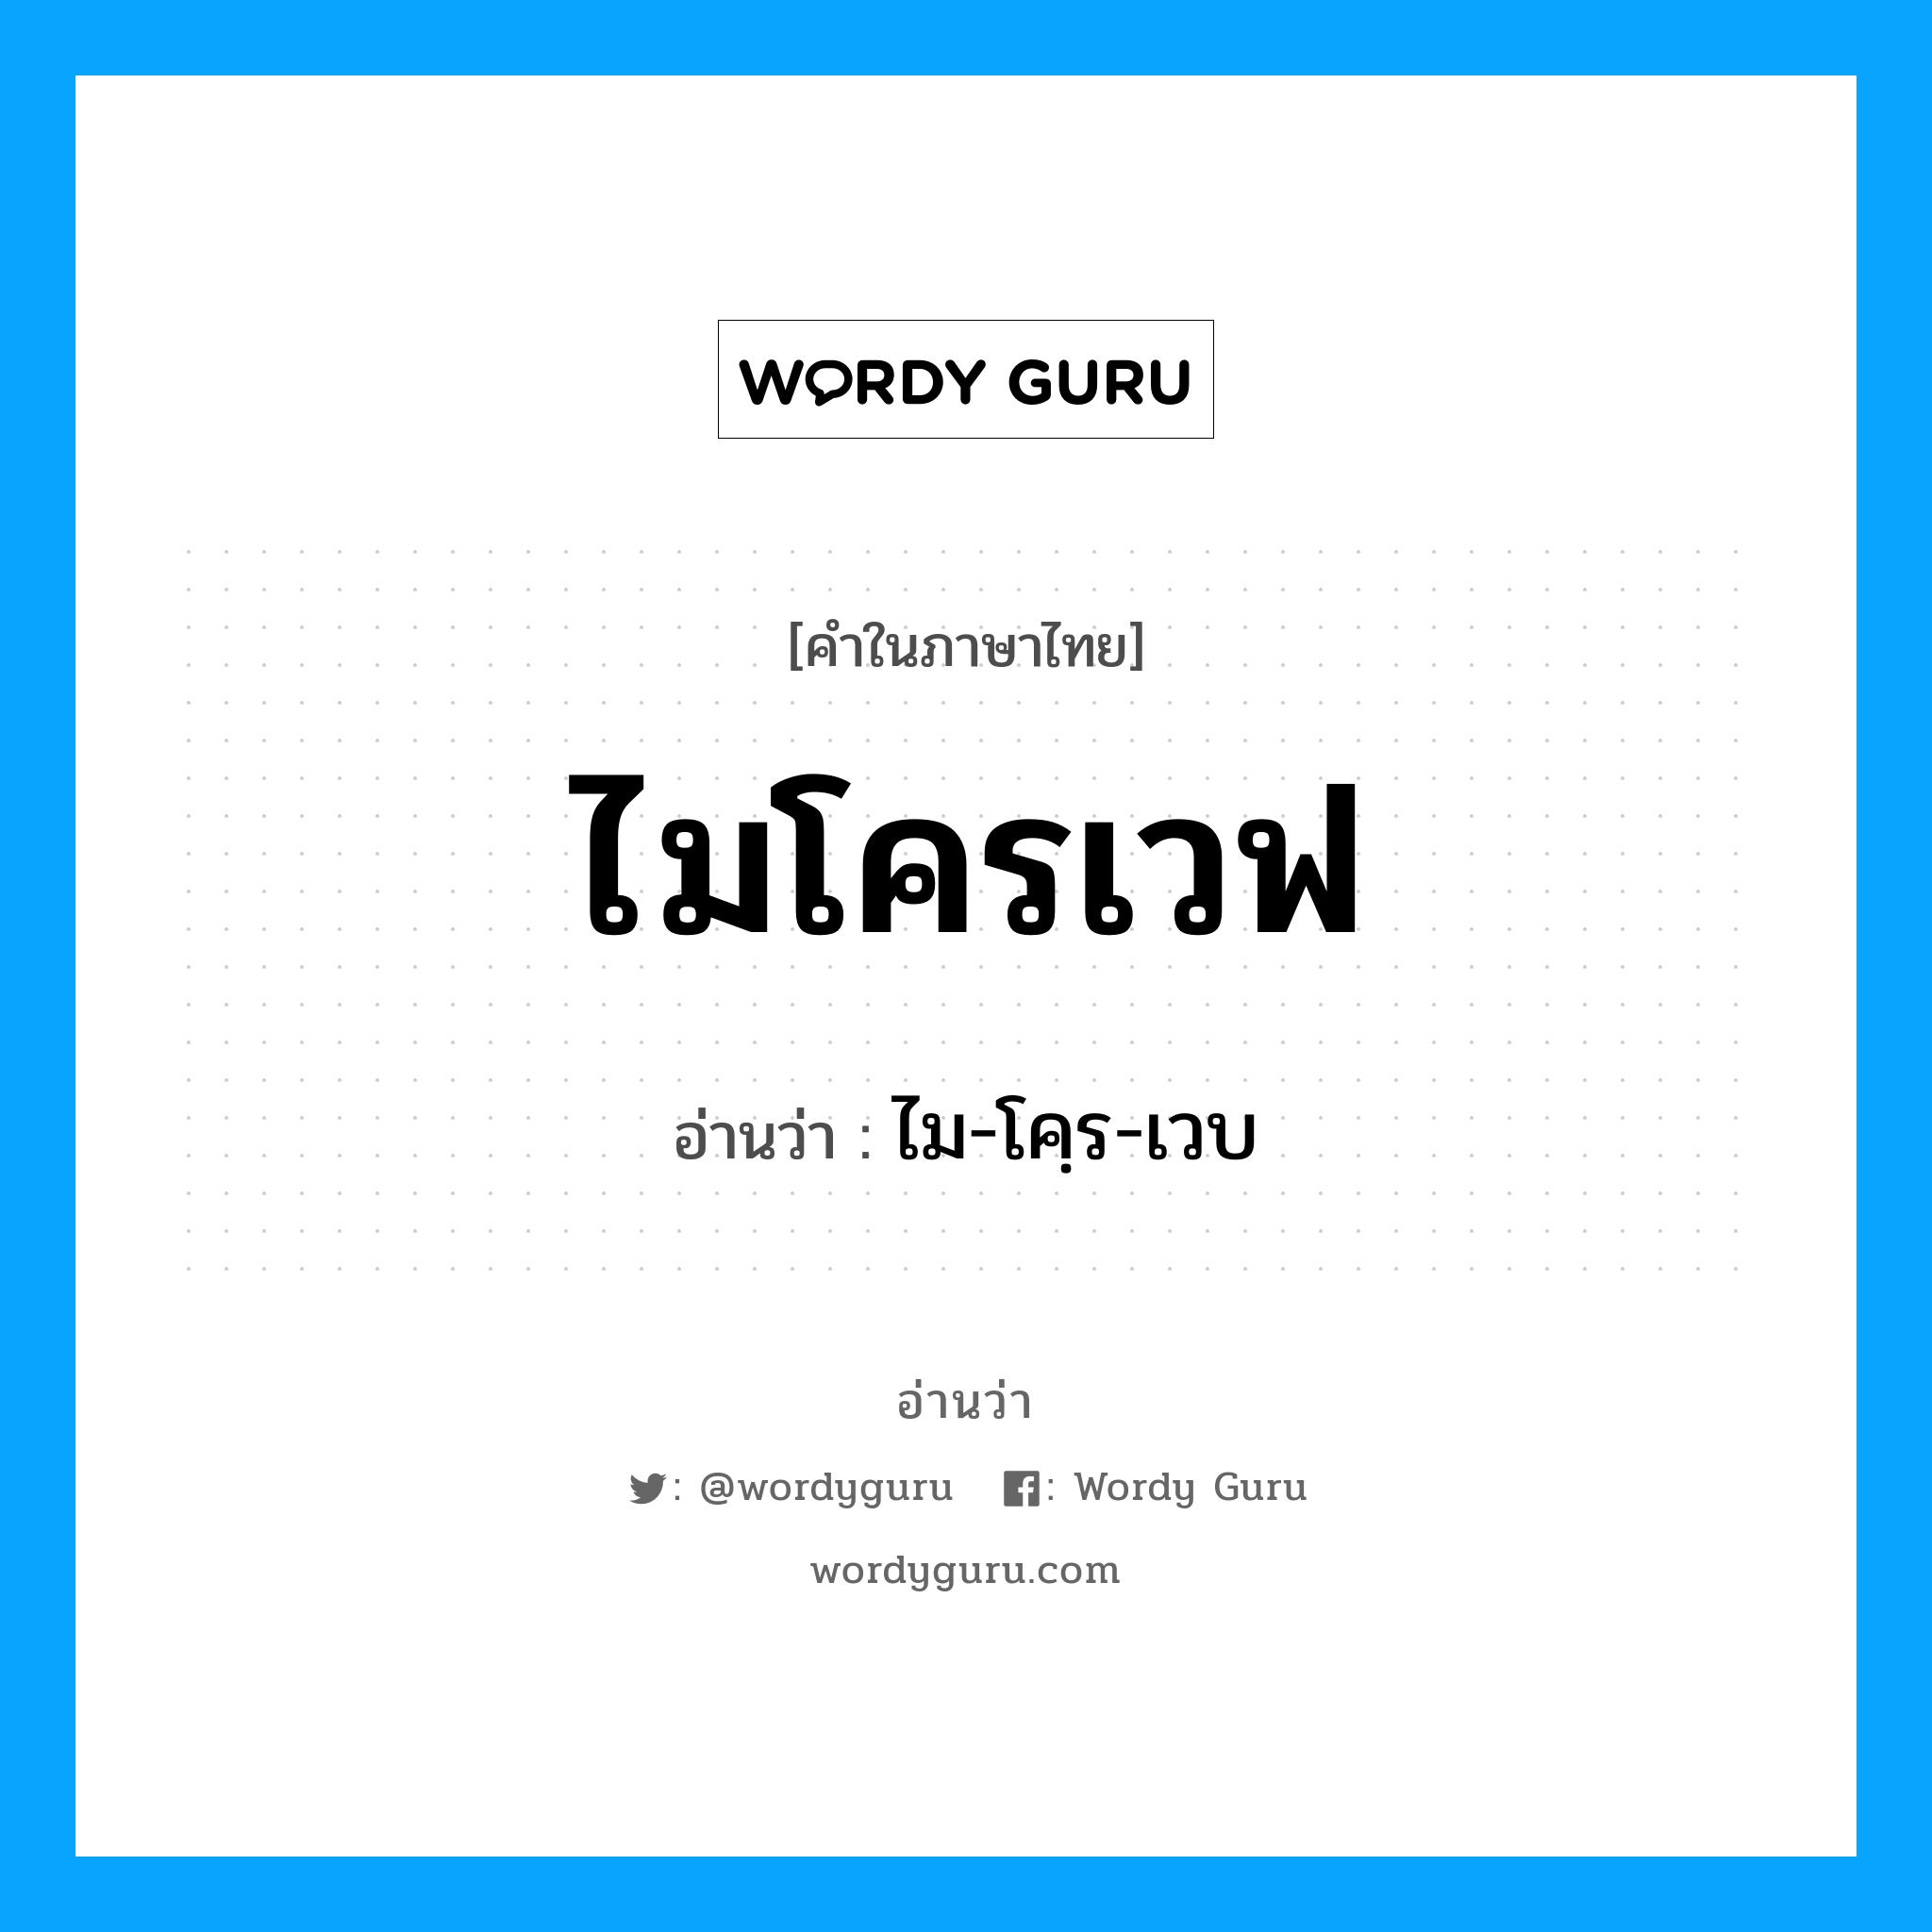 ไม-โคฺร-เวบ เป็นคำอ่านของคำไหน?, คำในภาษาไทย ไม-โคฺร-เวบ อ่านว่า ไมโครเวฟ